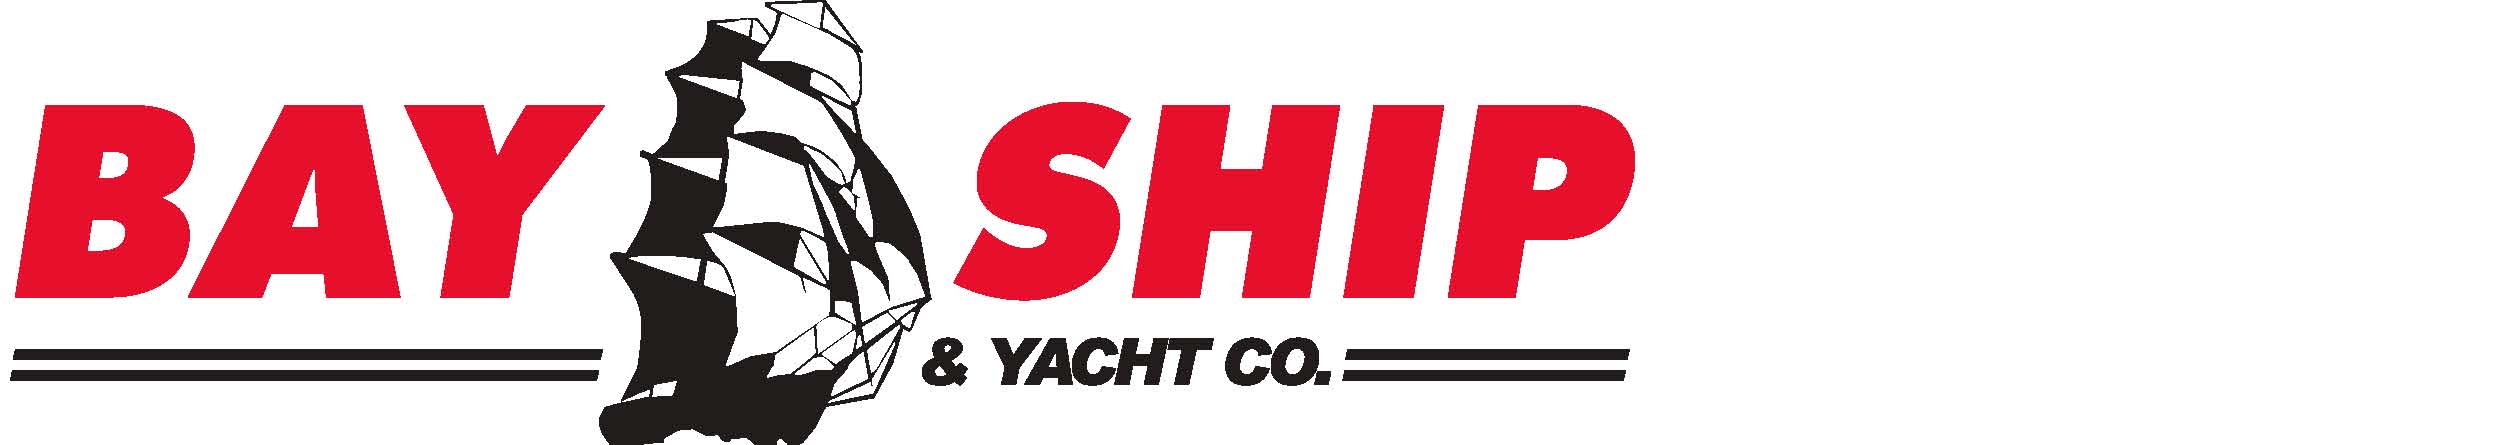 Bay Ship & Yacht logo